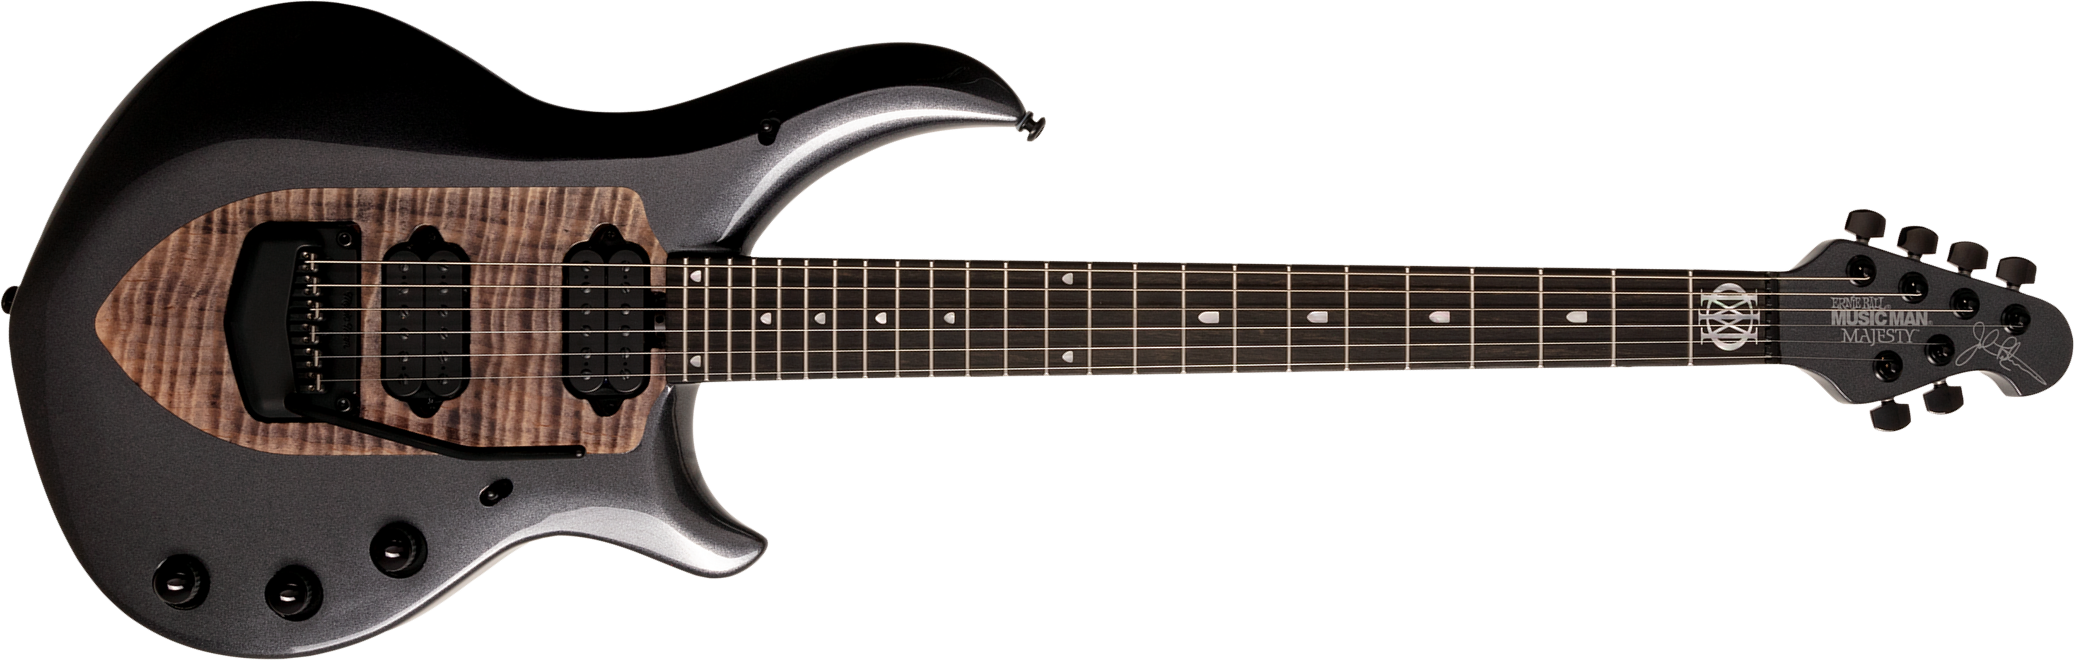 Music Man John Petrucci Majesty 6 Signature 2h Dimarzio Piezo Trem - Smoked Pearl - Guitare Électrique MÉtal - Main picture